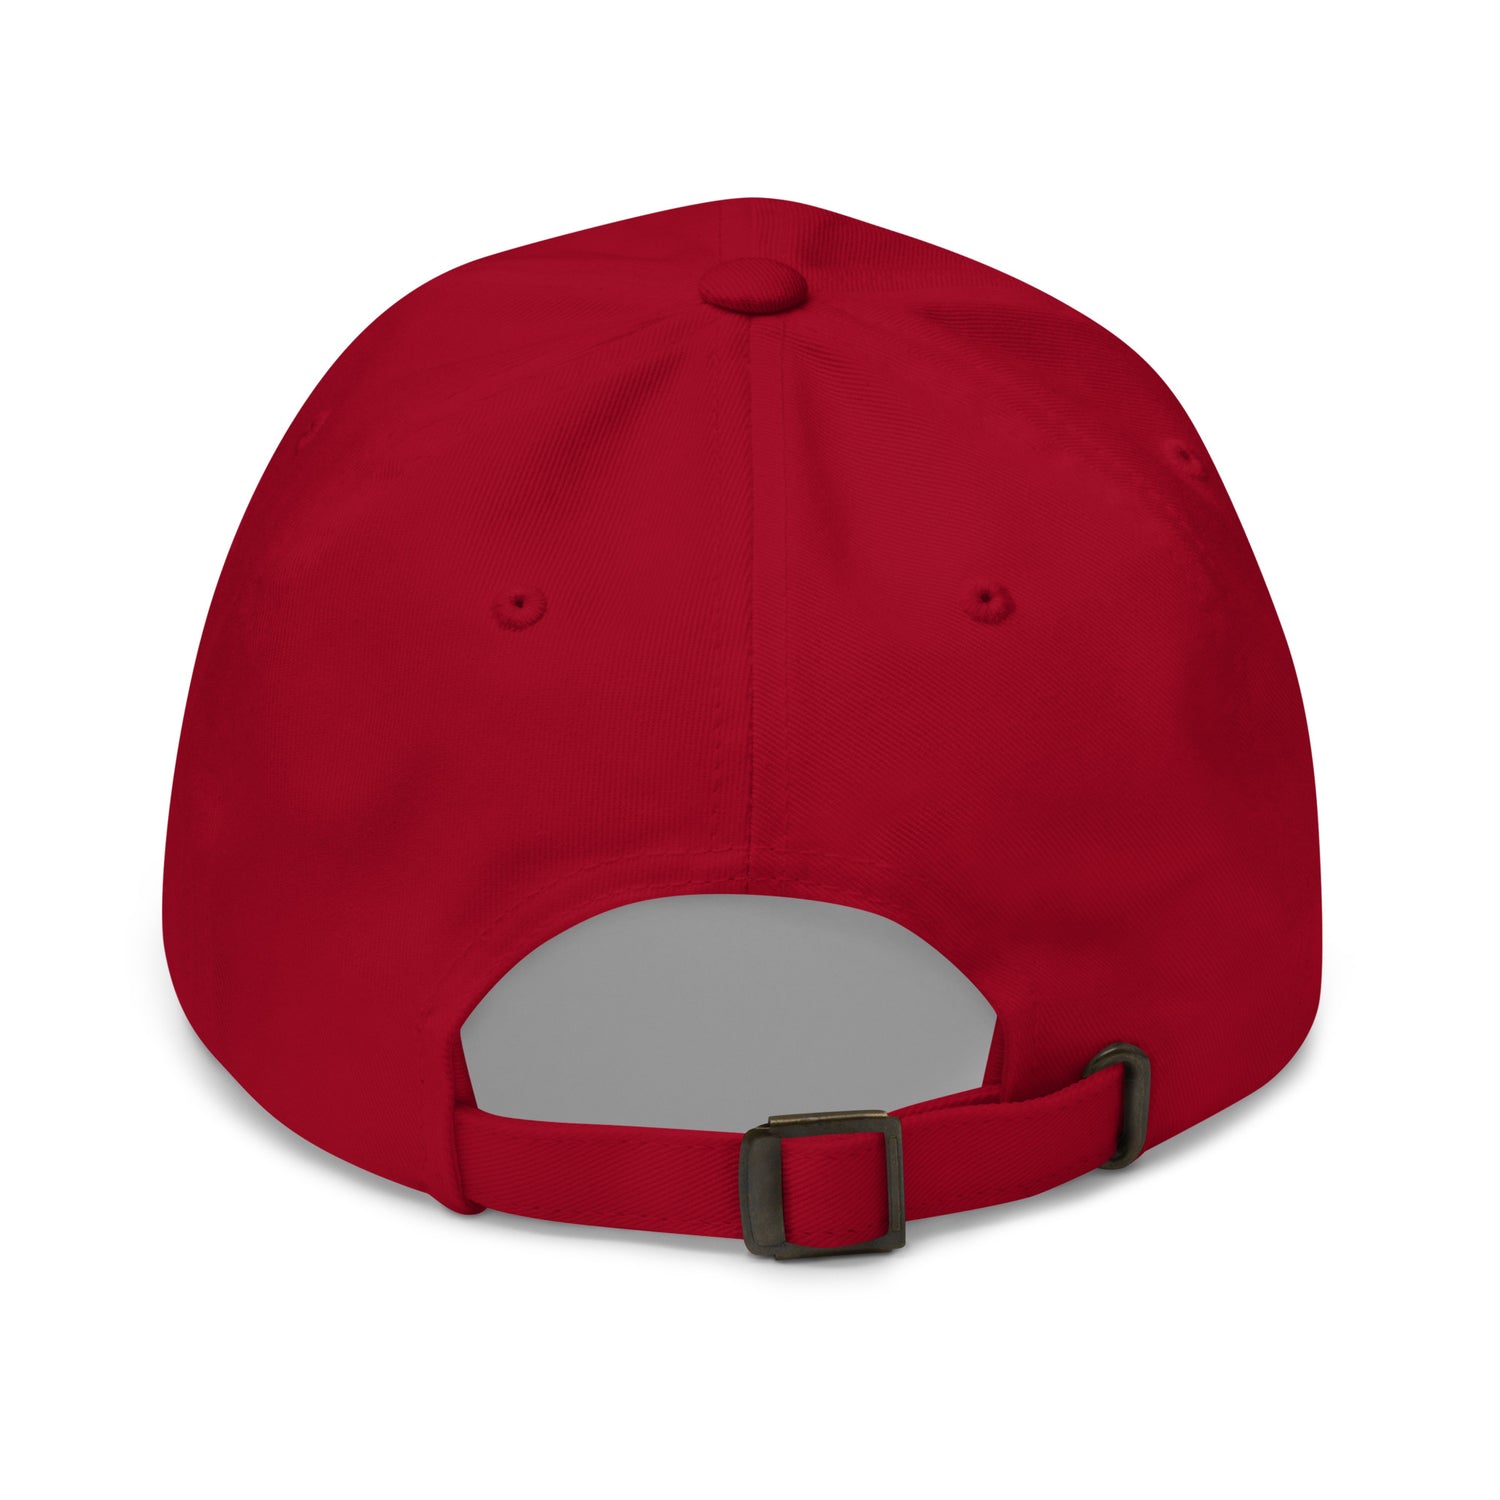 Chop Paljor "Essential" hat - Fan Arch